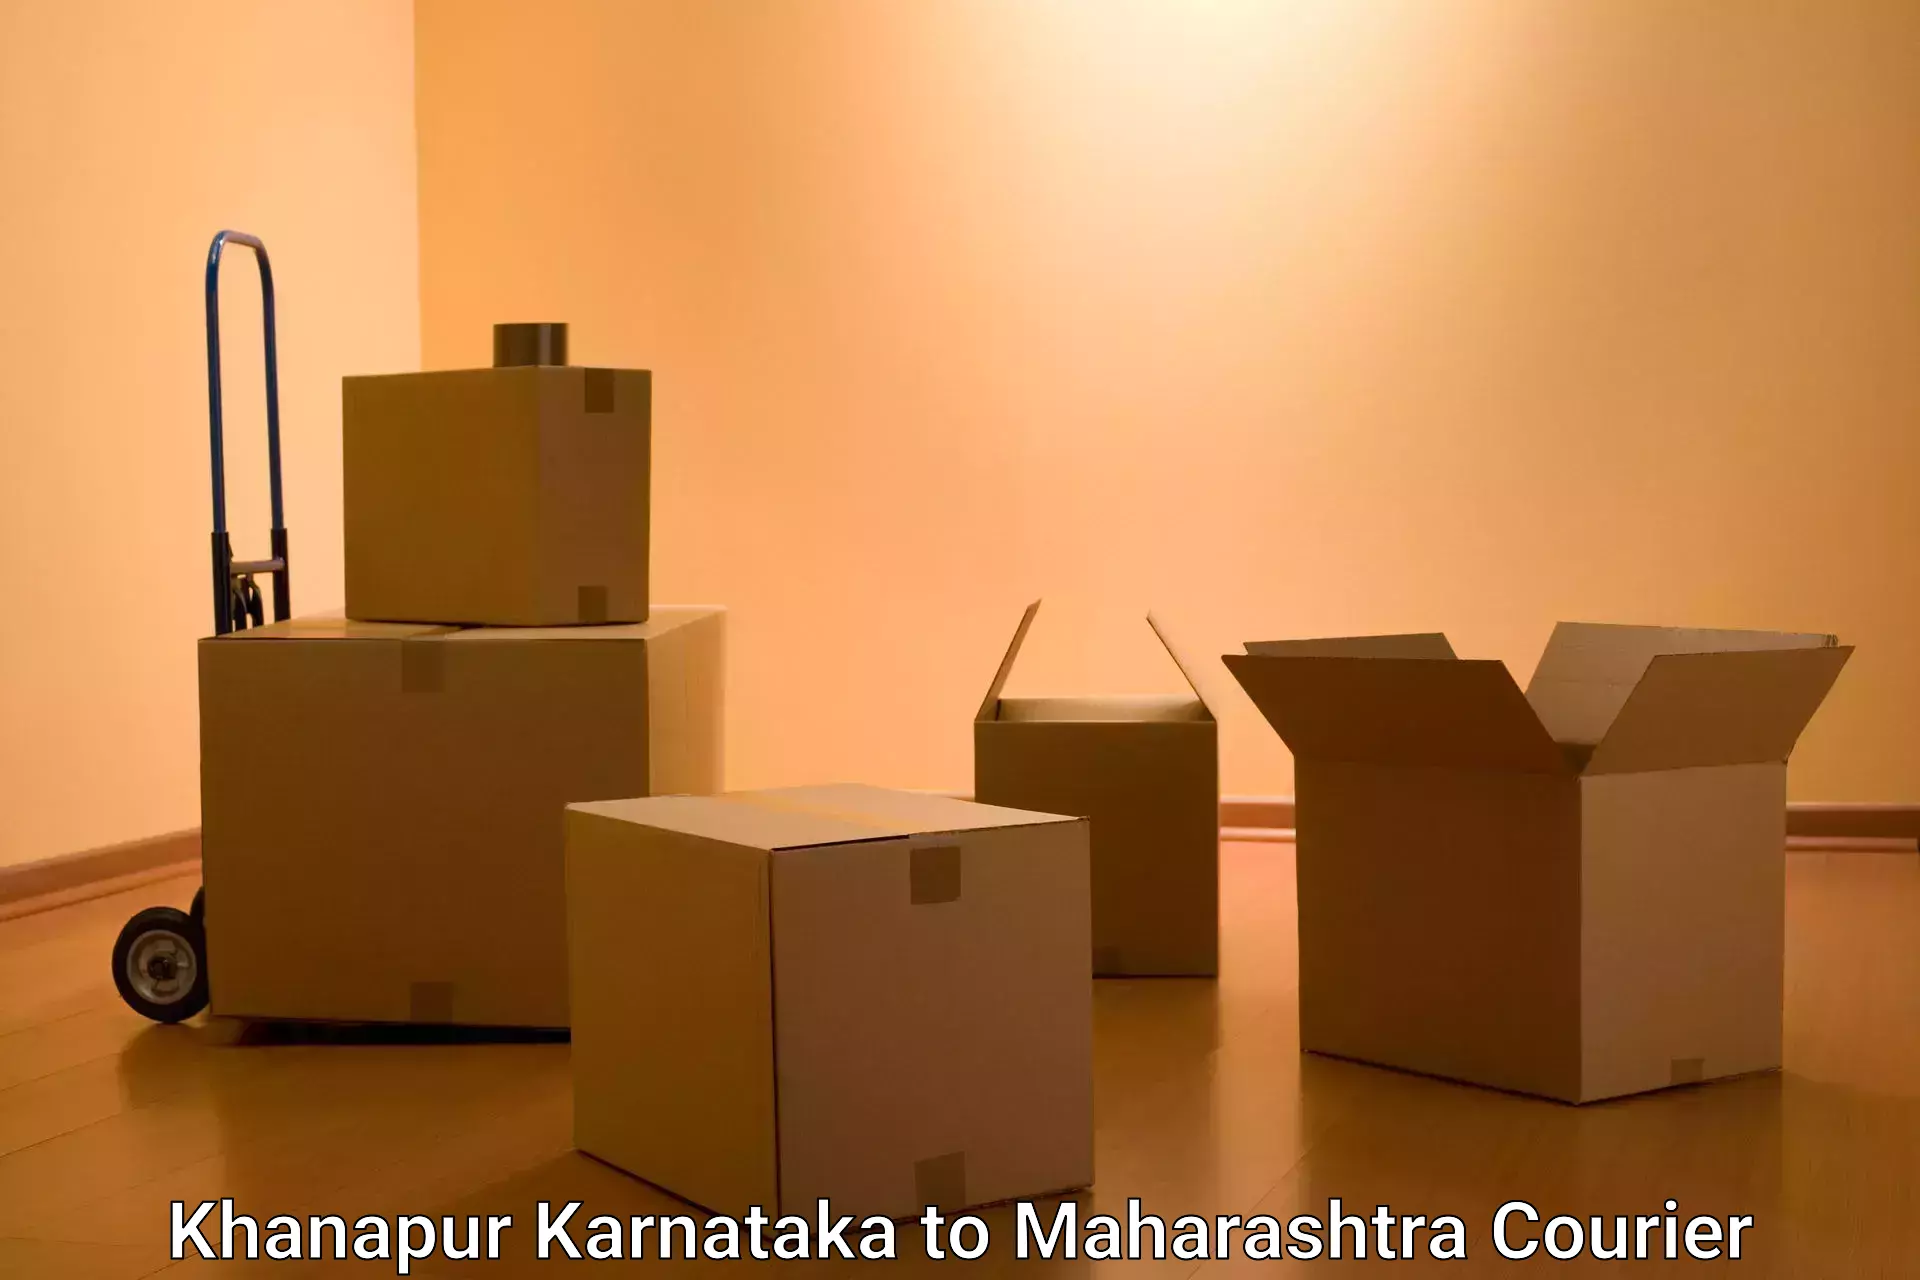 Urban courier service Khanapur Karnataka to Shrivardhan